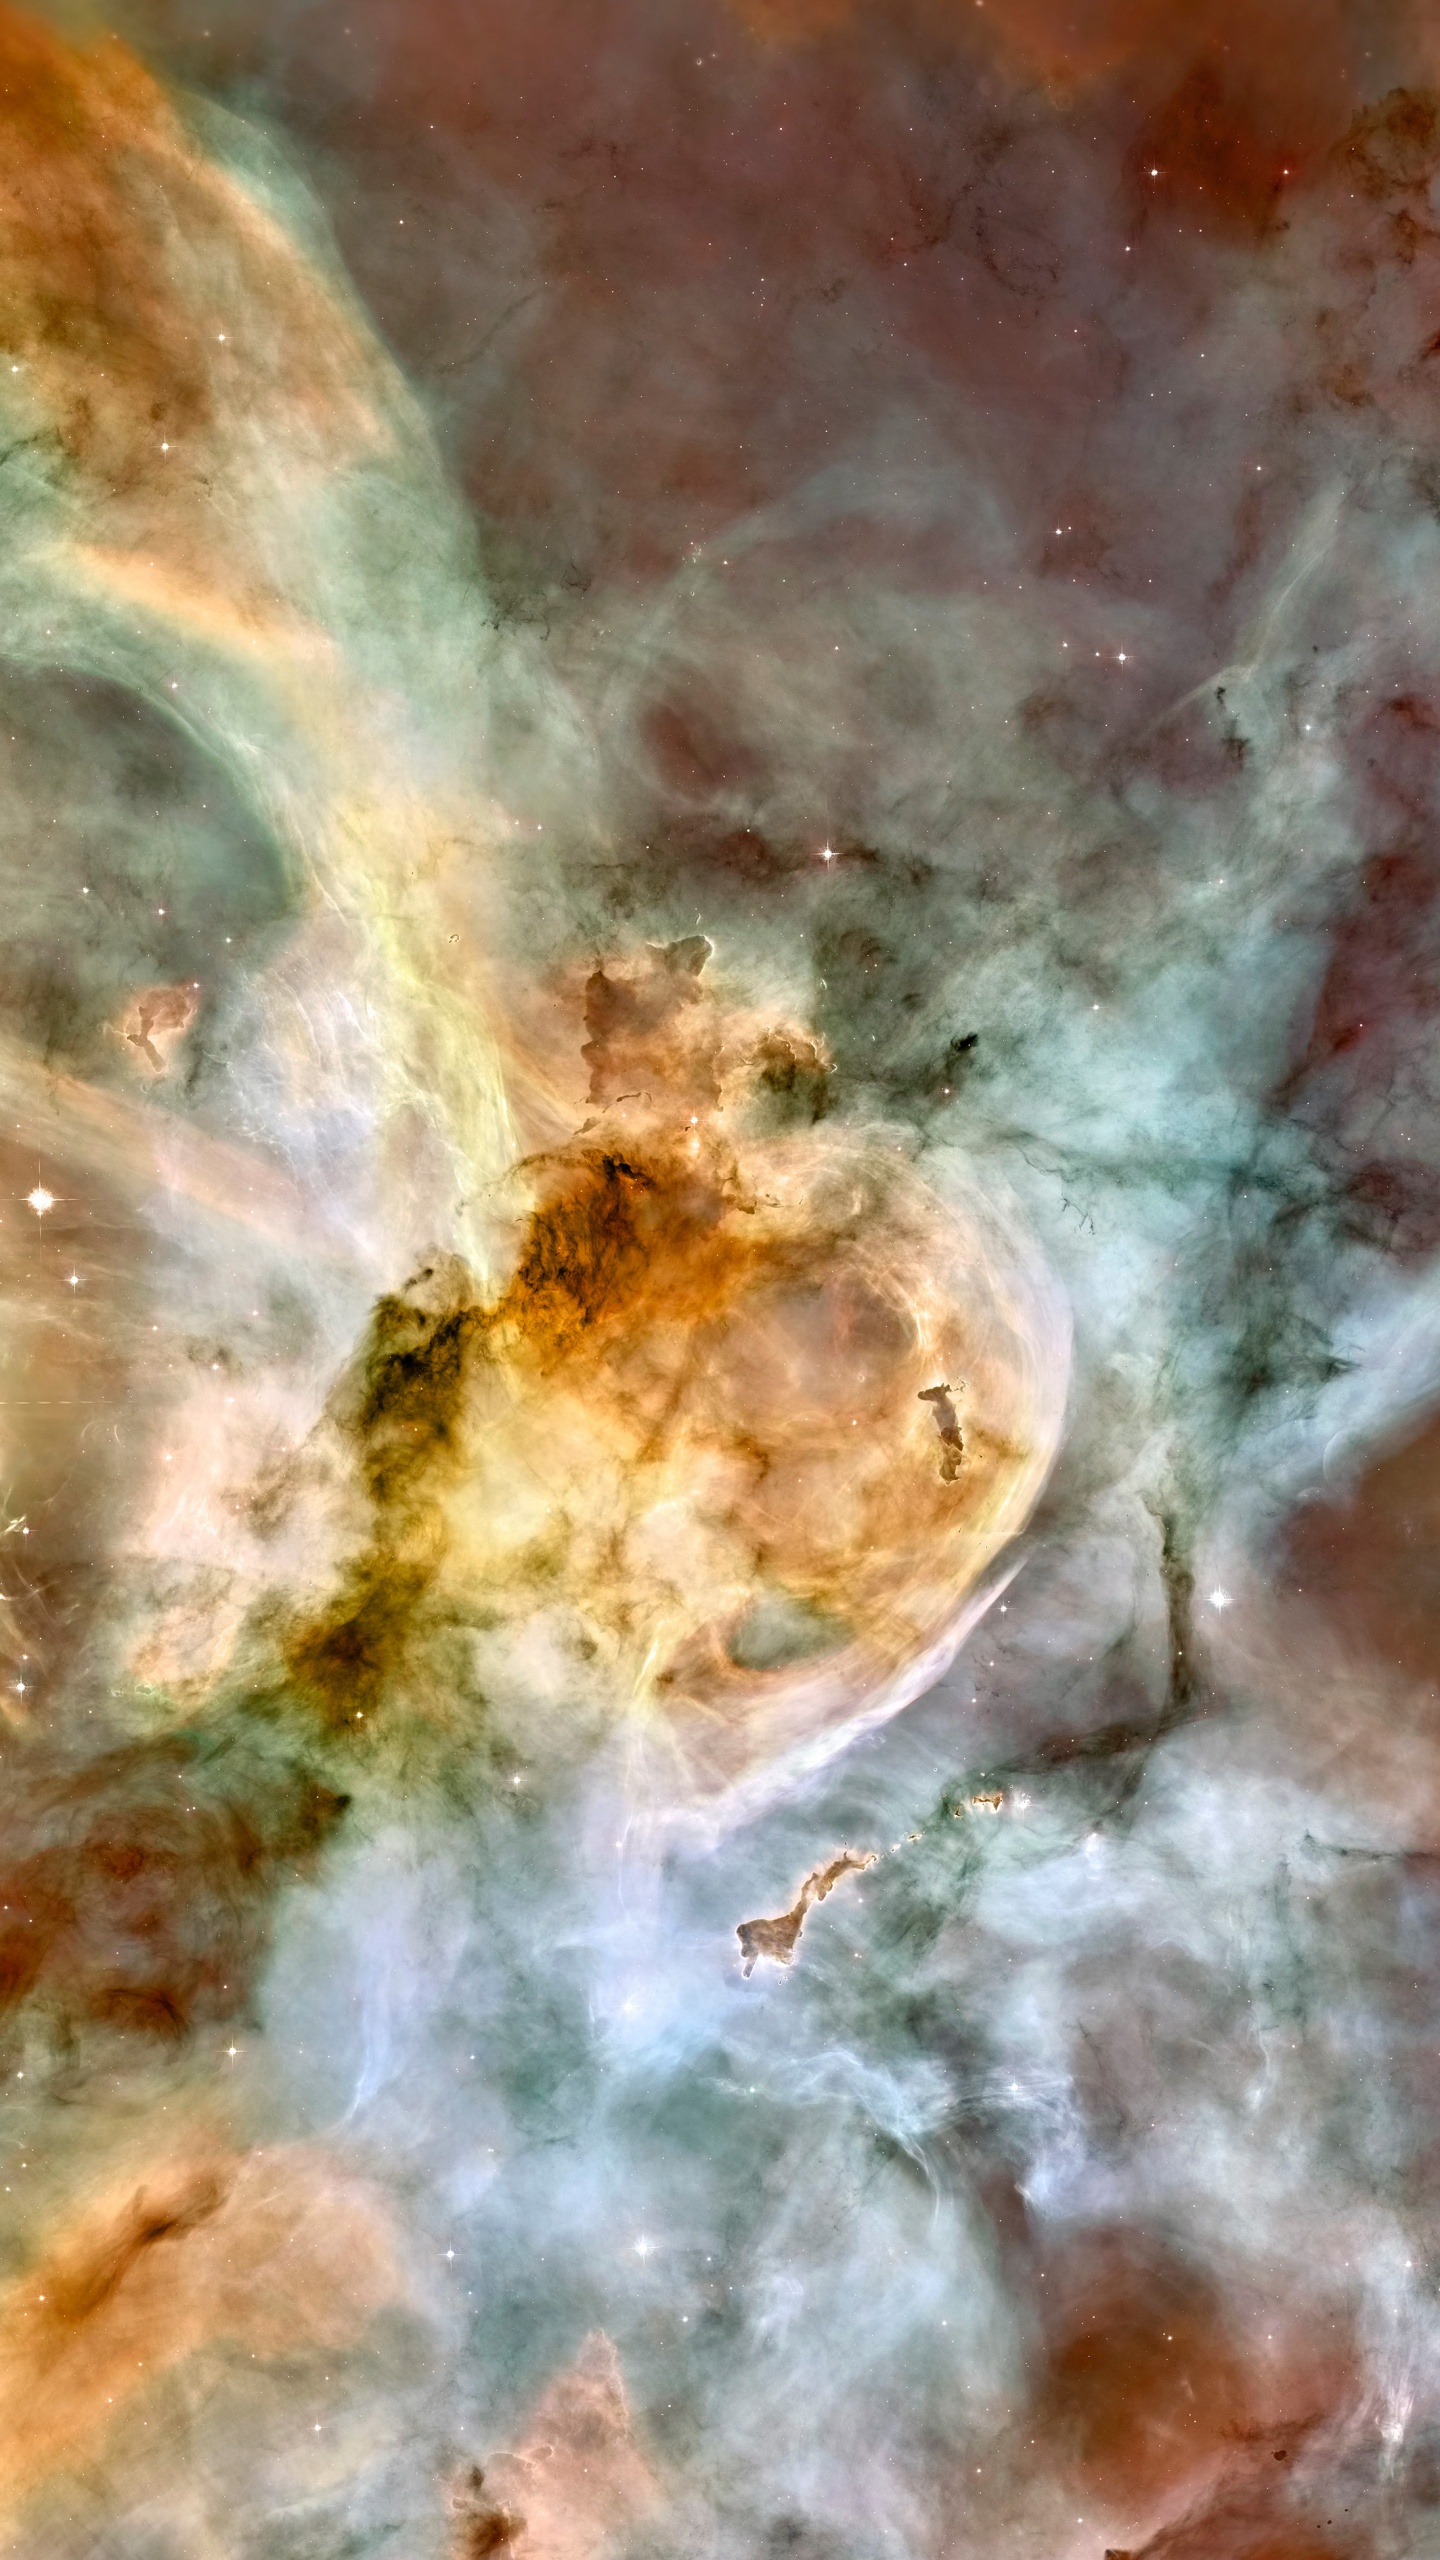 Carina星云, 哈勃太空望远镜, 明星, 空间, 天文学对象 壁纸 1440x2560 允许